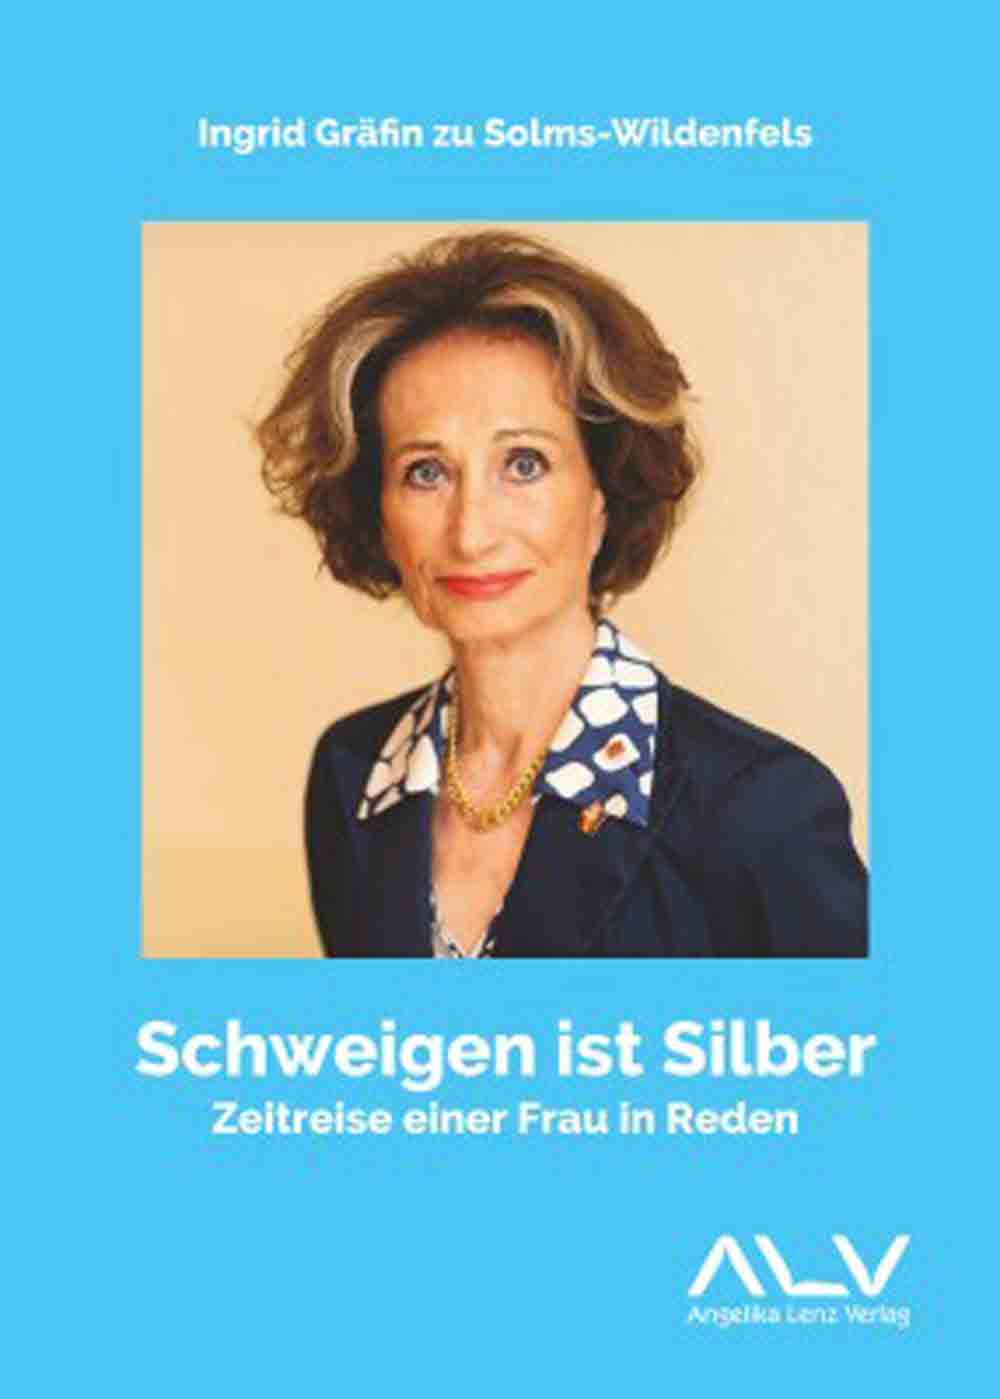 Lesetipps für Gütersloh, Ingrid Gräfin zu Solms Wildenfels, »Schweigen ist Silber – Zeitreise einer Frau in Reden«